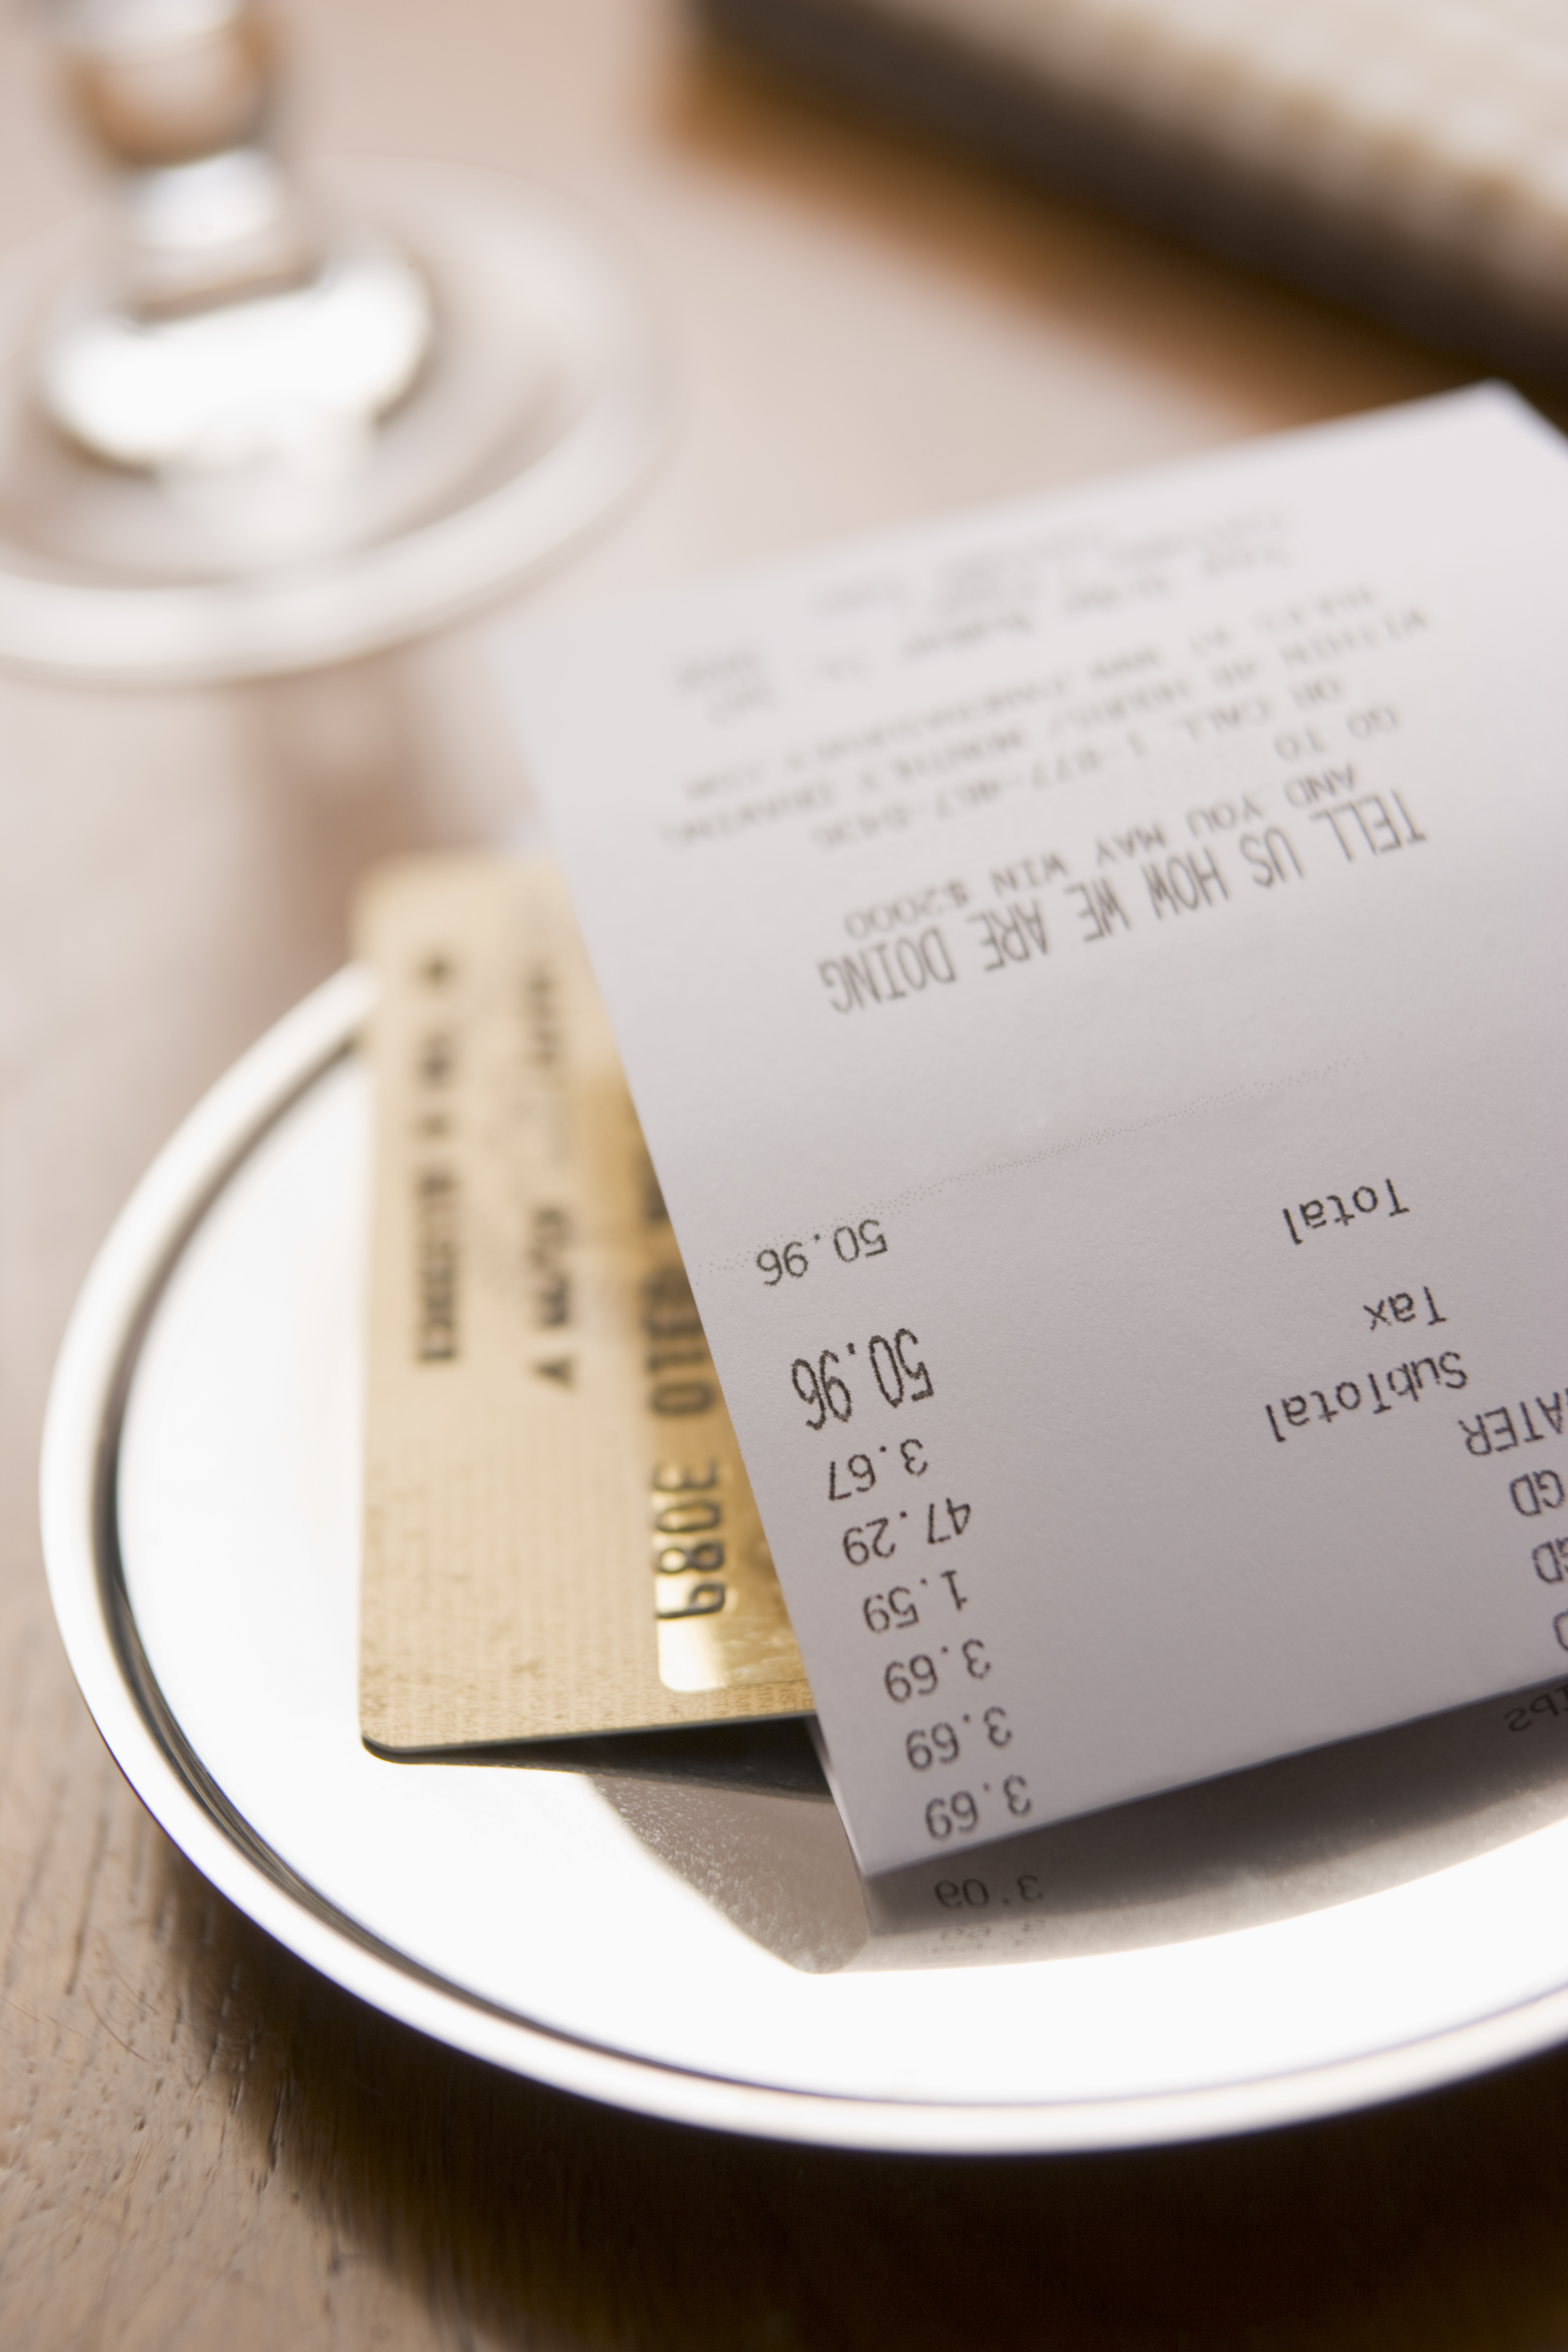 Une facture de restaurant et une carte de crédit | Source : Shutterstock